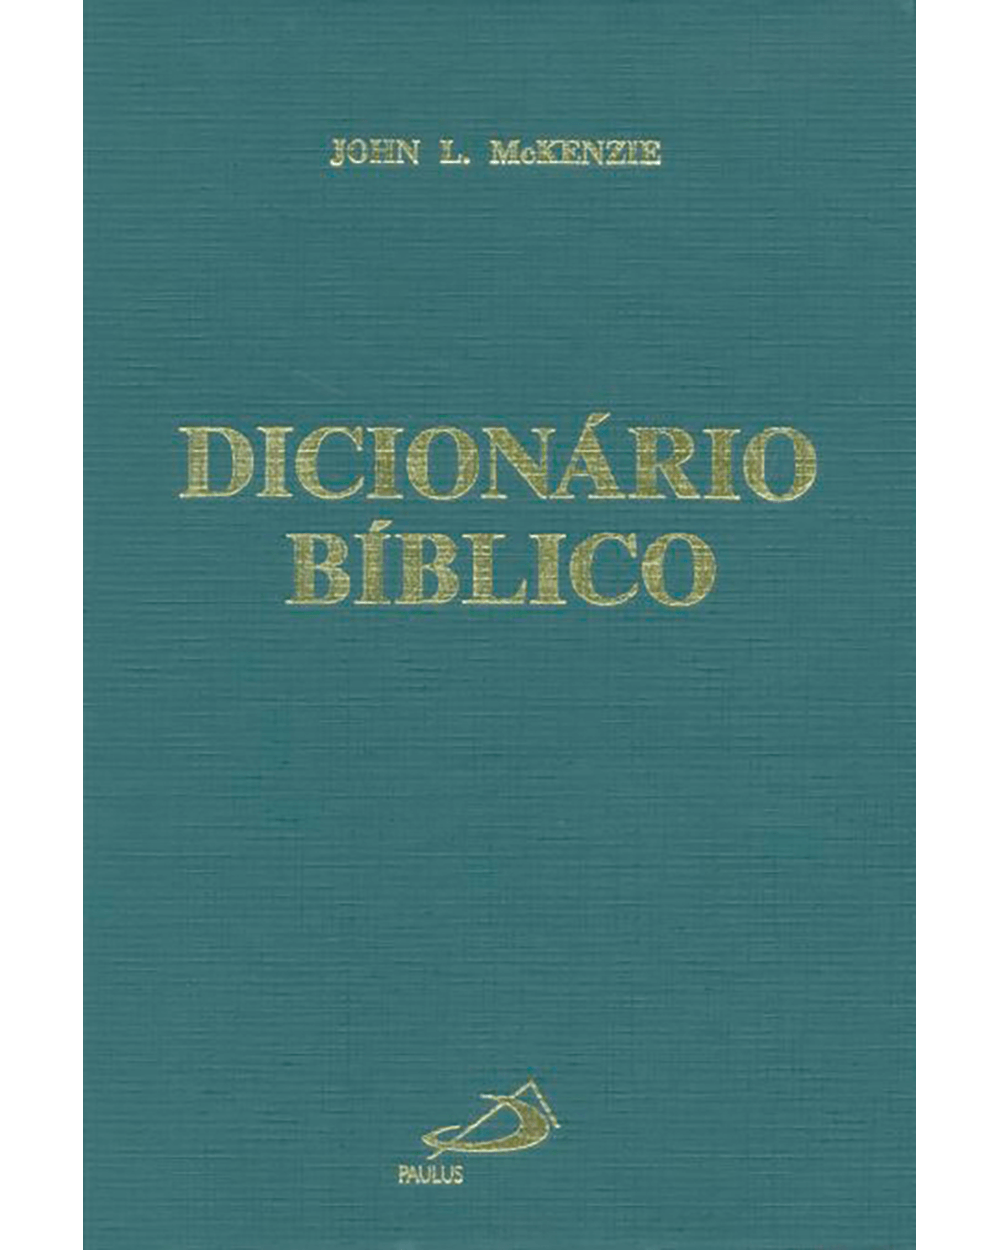  4000,00 Nomes Bíblicos: Nomes bíblicos masculinos e femininos  (Portuguese Edition): 9798570450172: PEREIRA, EDIMILSON G: Libros